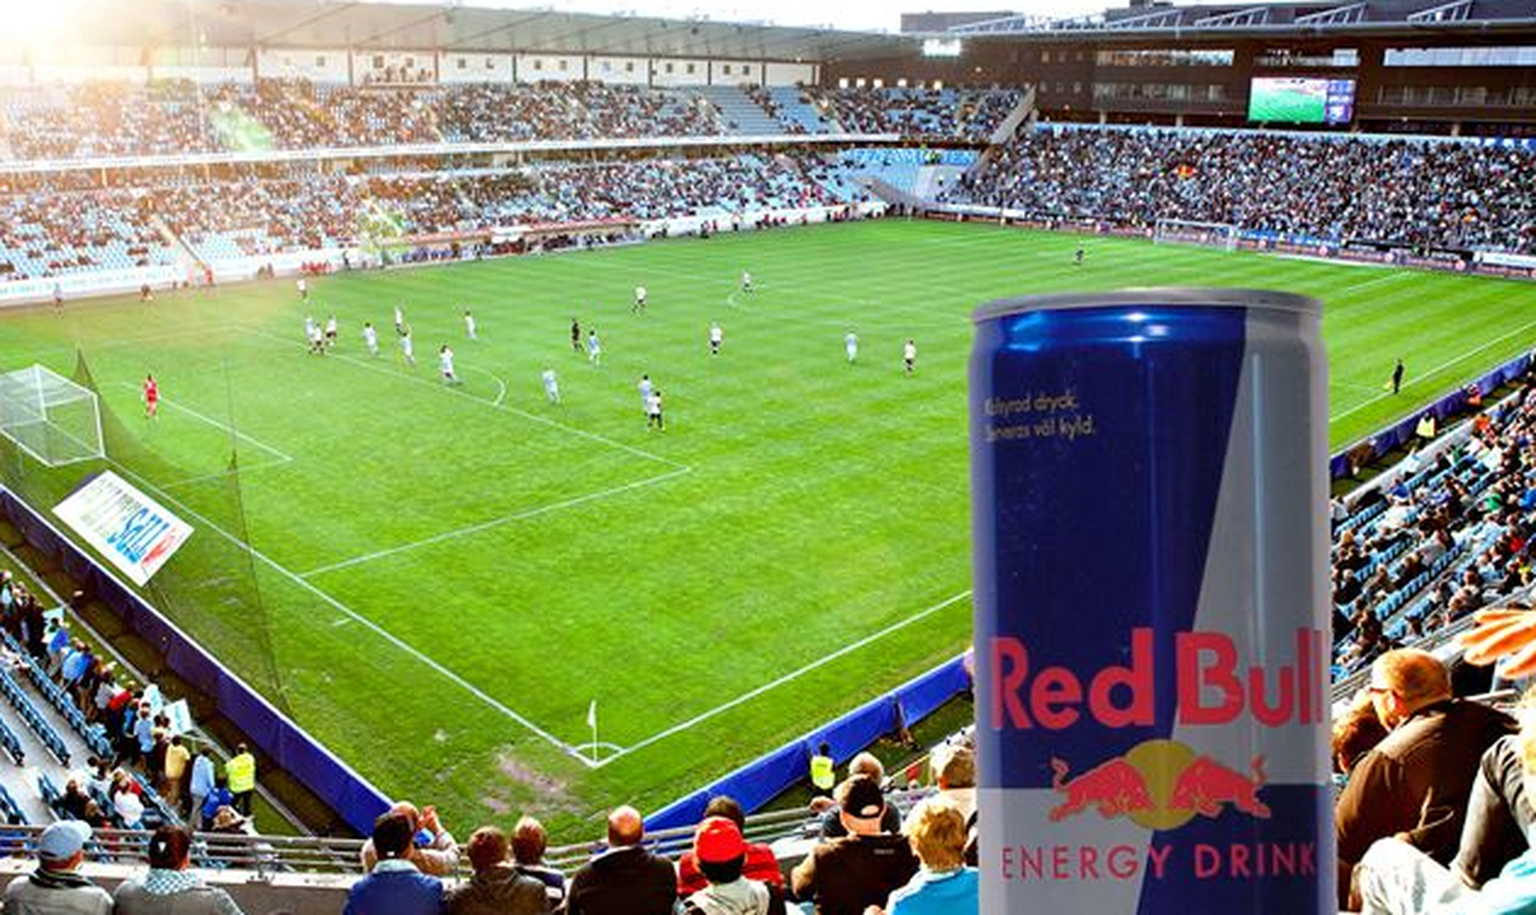 Fotomontage von einer Red-Bull-Dose im Swedbank Stadion.